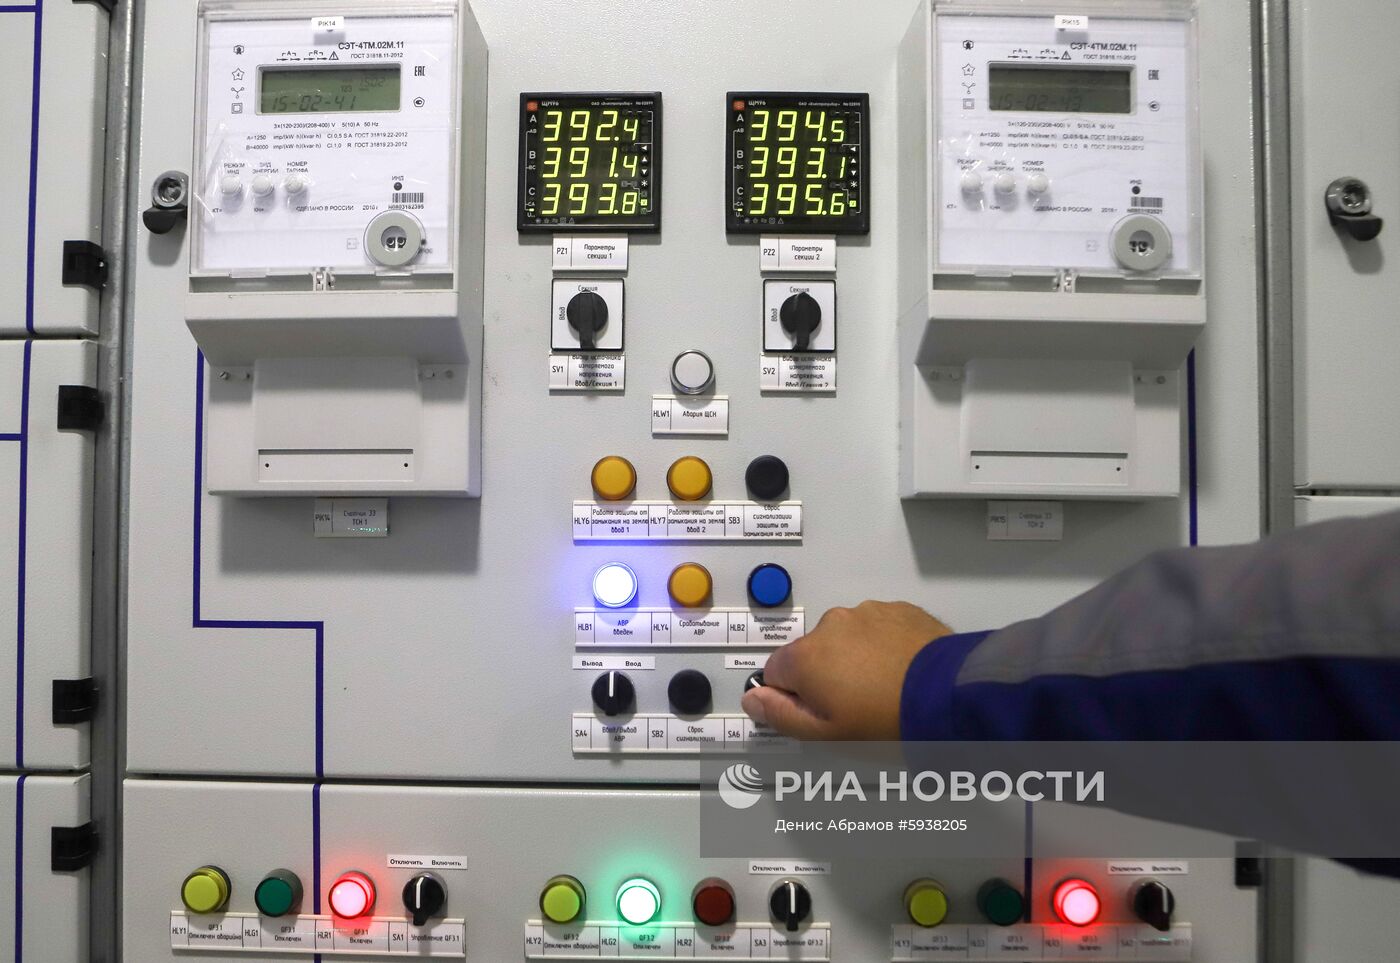 Первая очередь солнечной электростанции введена в эксплуатацию в Ставропольском крае